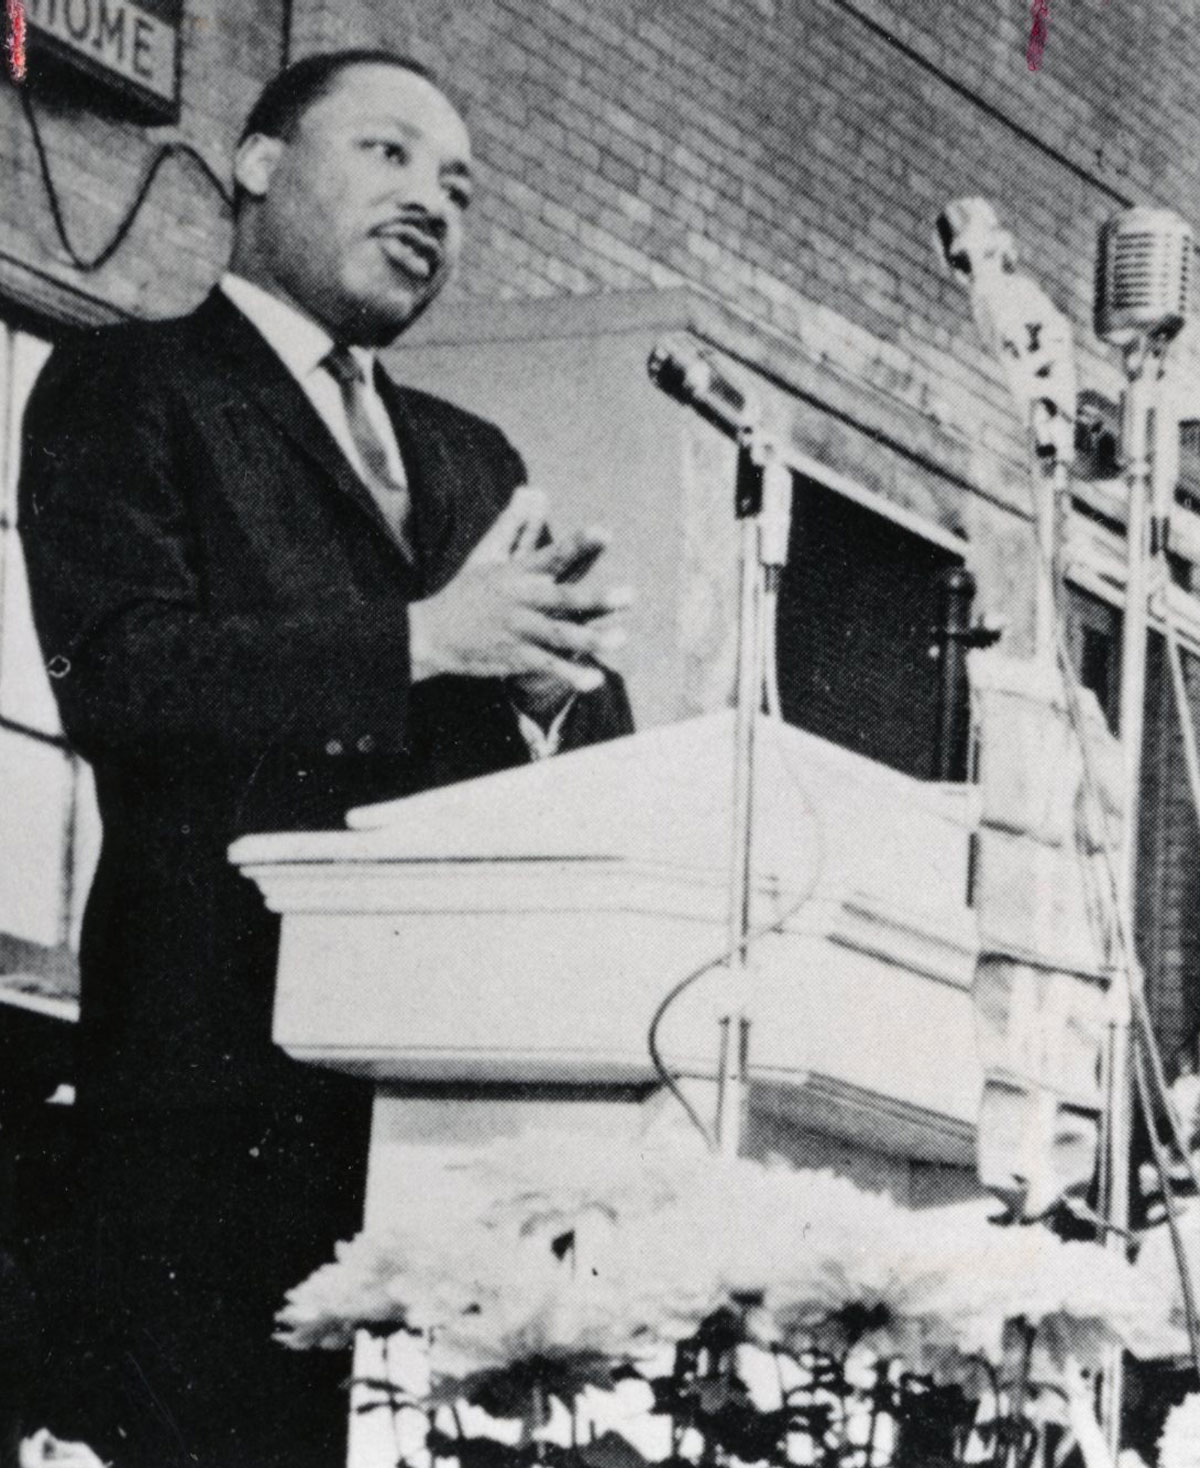 Dr. Martin Luther King Jr. speaks at 